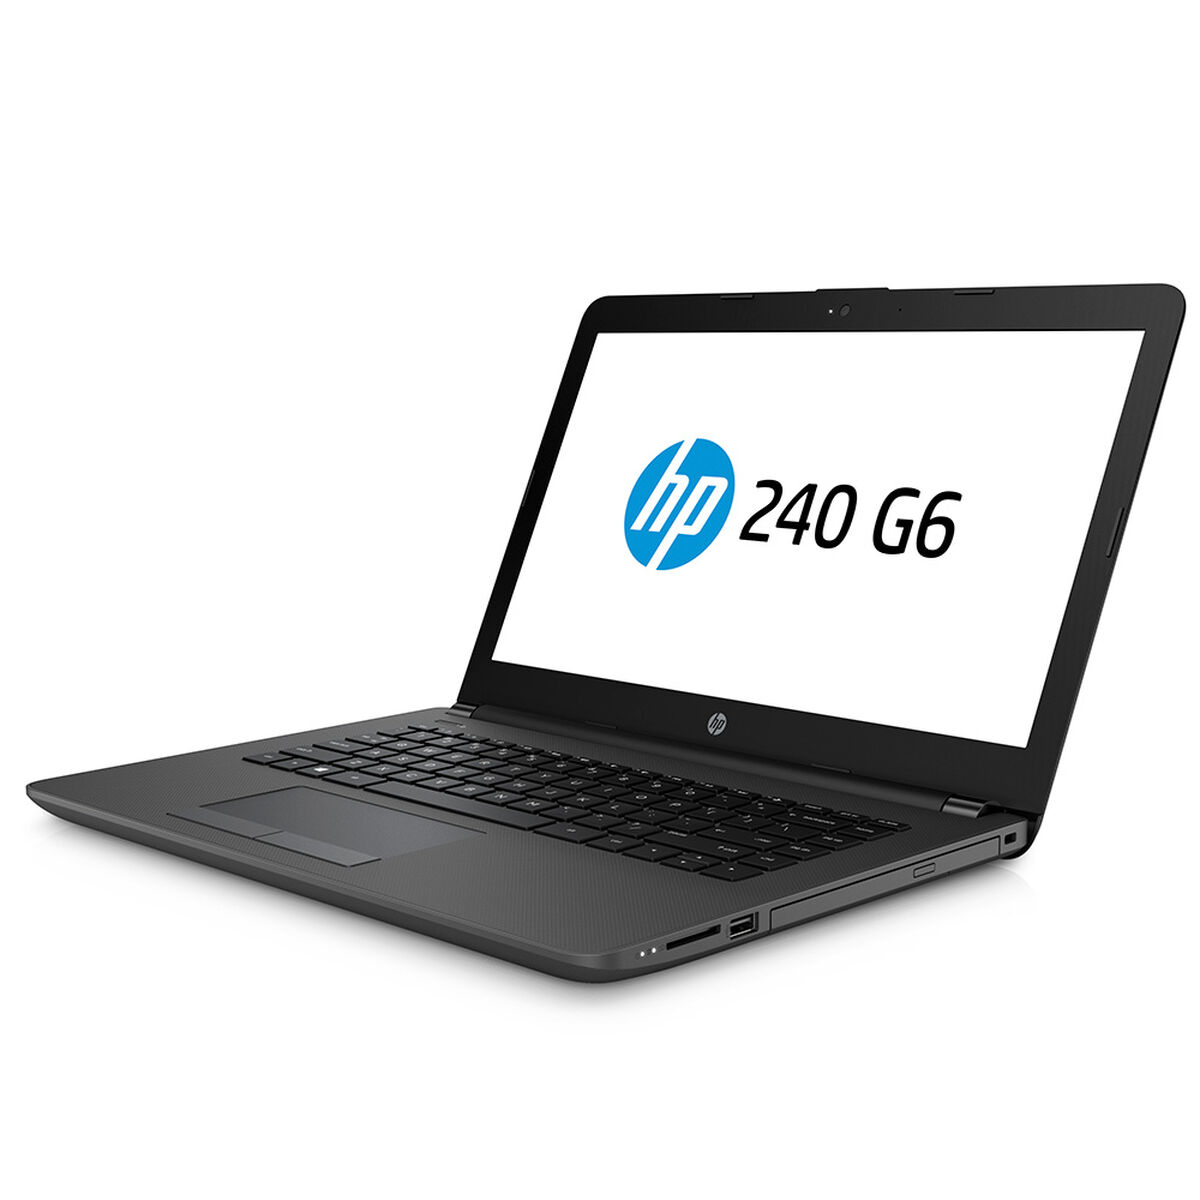 Notebook HP 240 G6 Core i3-6006U 4GB 1TB 14"